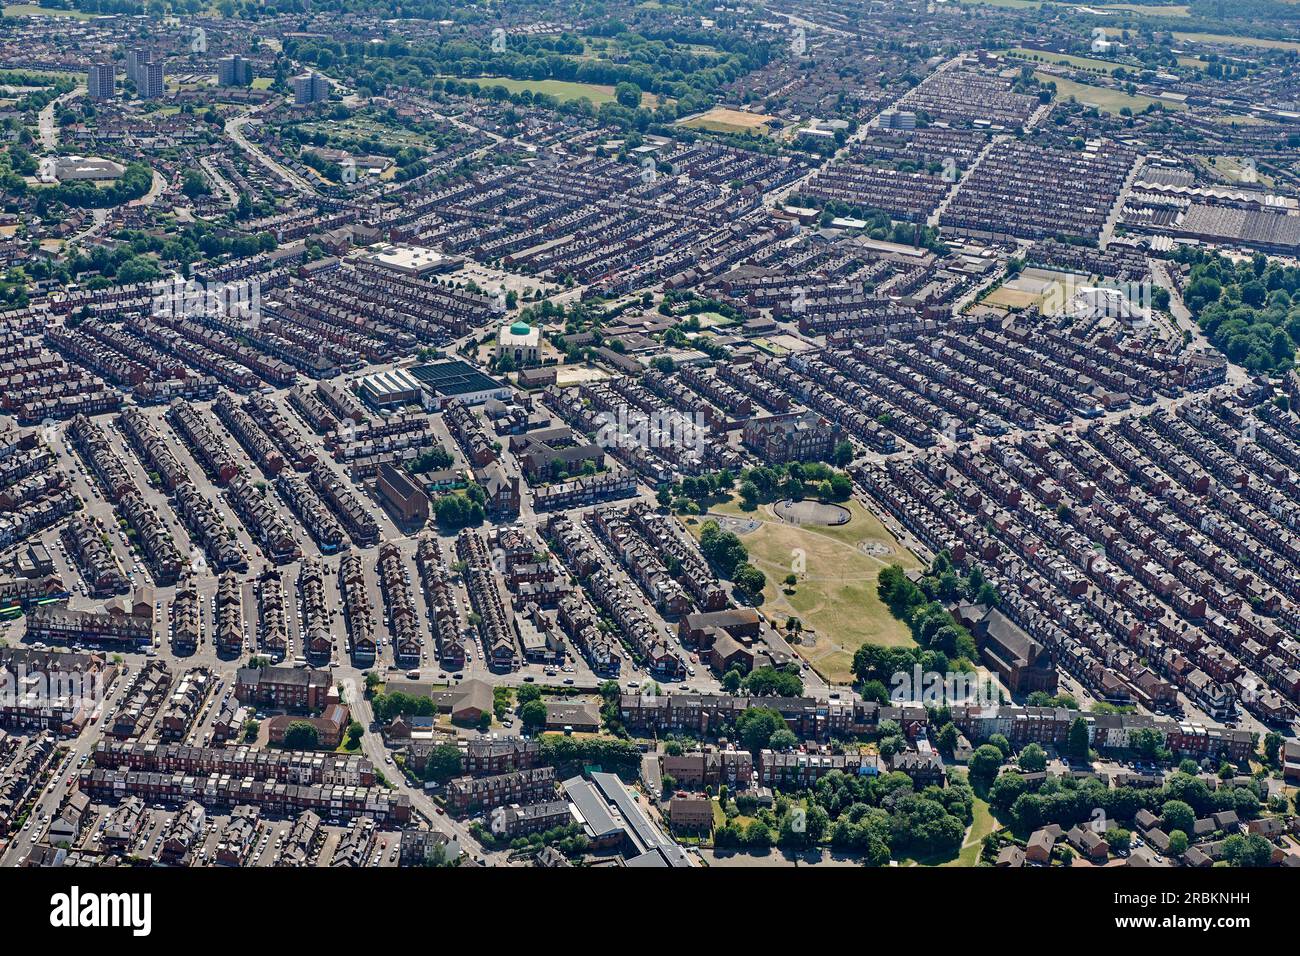 Una fotografia aerea della victoria Terrace che si trova nell'area di Chapeltown di East Leeds, West Yorkshire, Inghilterra settentrionale, Regno Unito Foto Stock